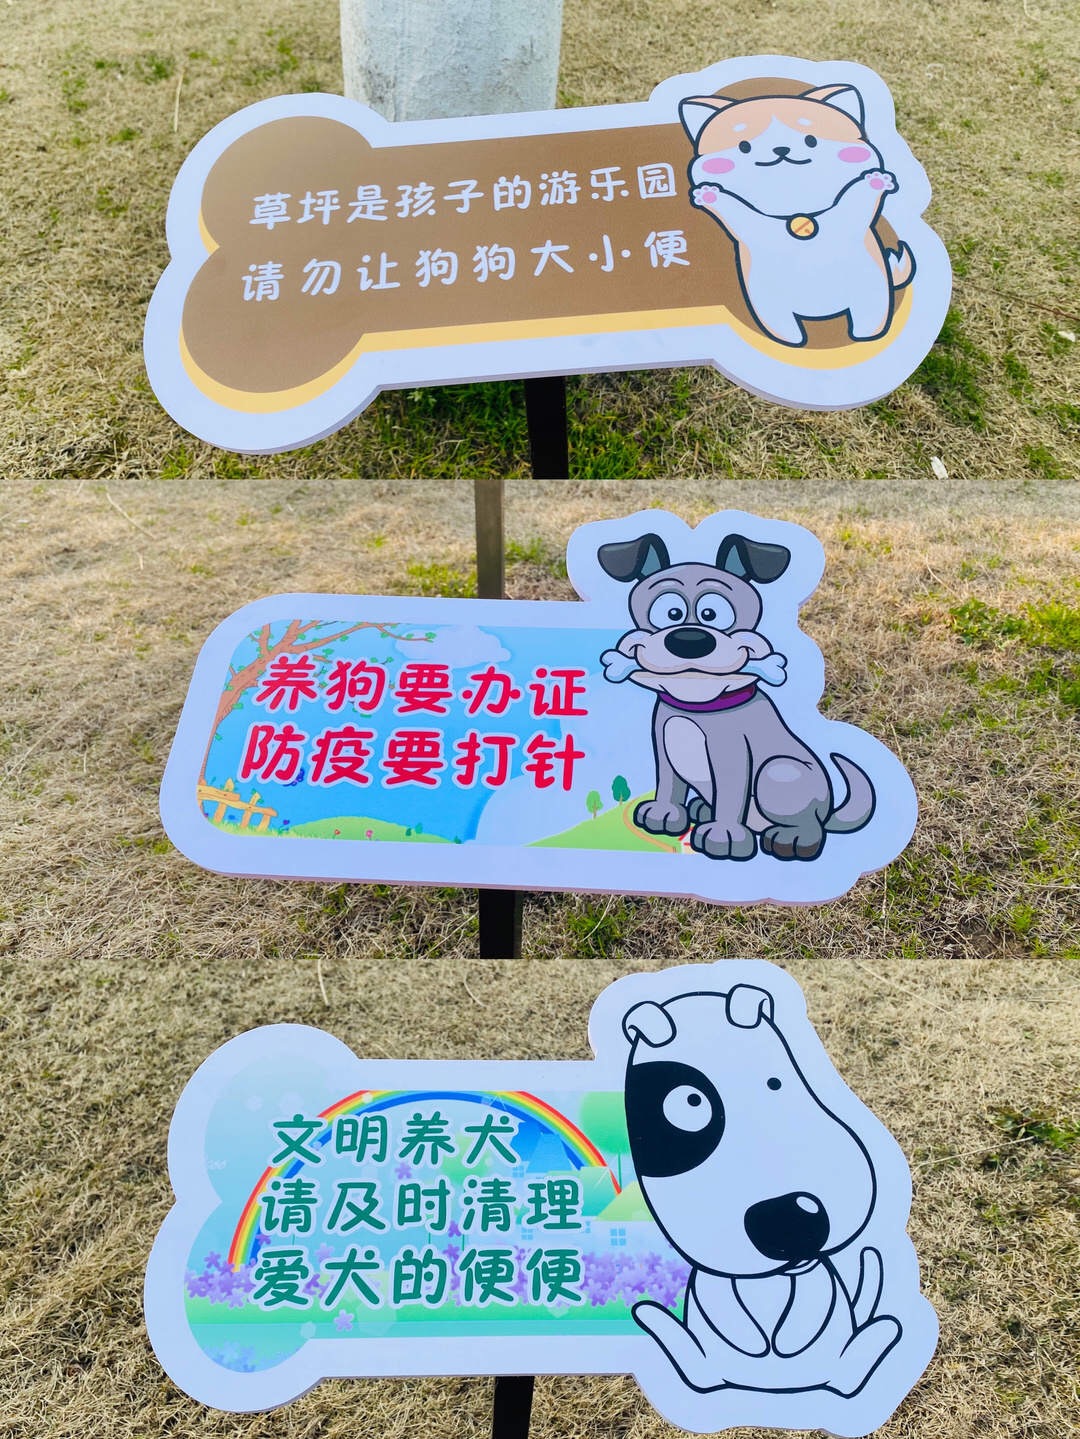 明光街道南大寺社区开展“文明养犬 从我做起”宣传活动_明光市人民政府